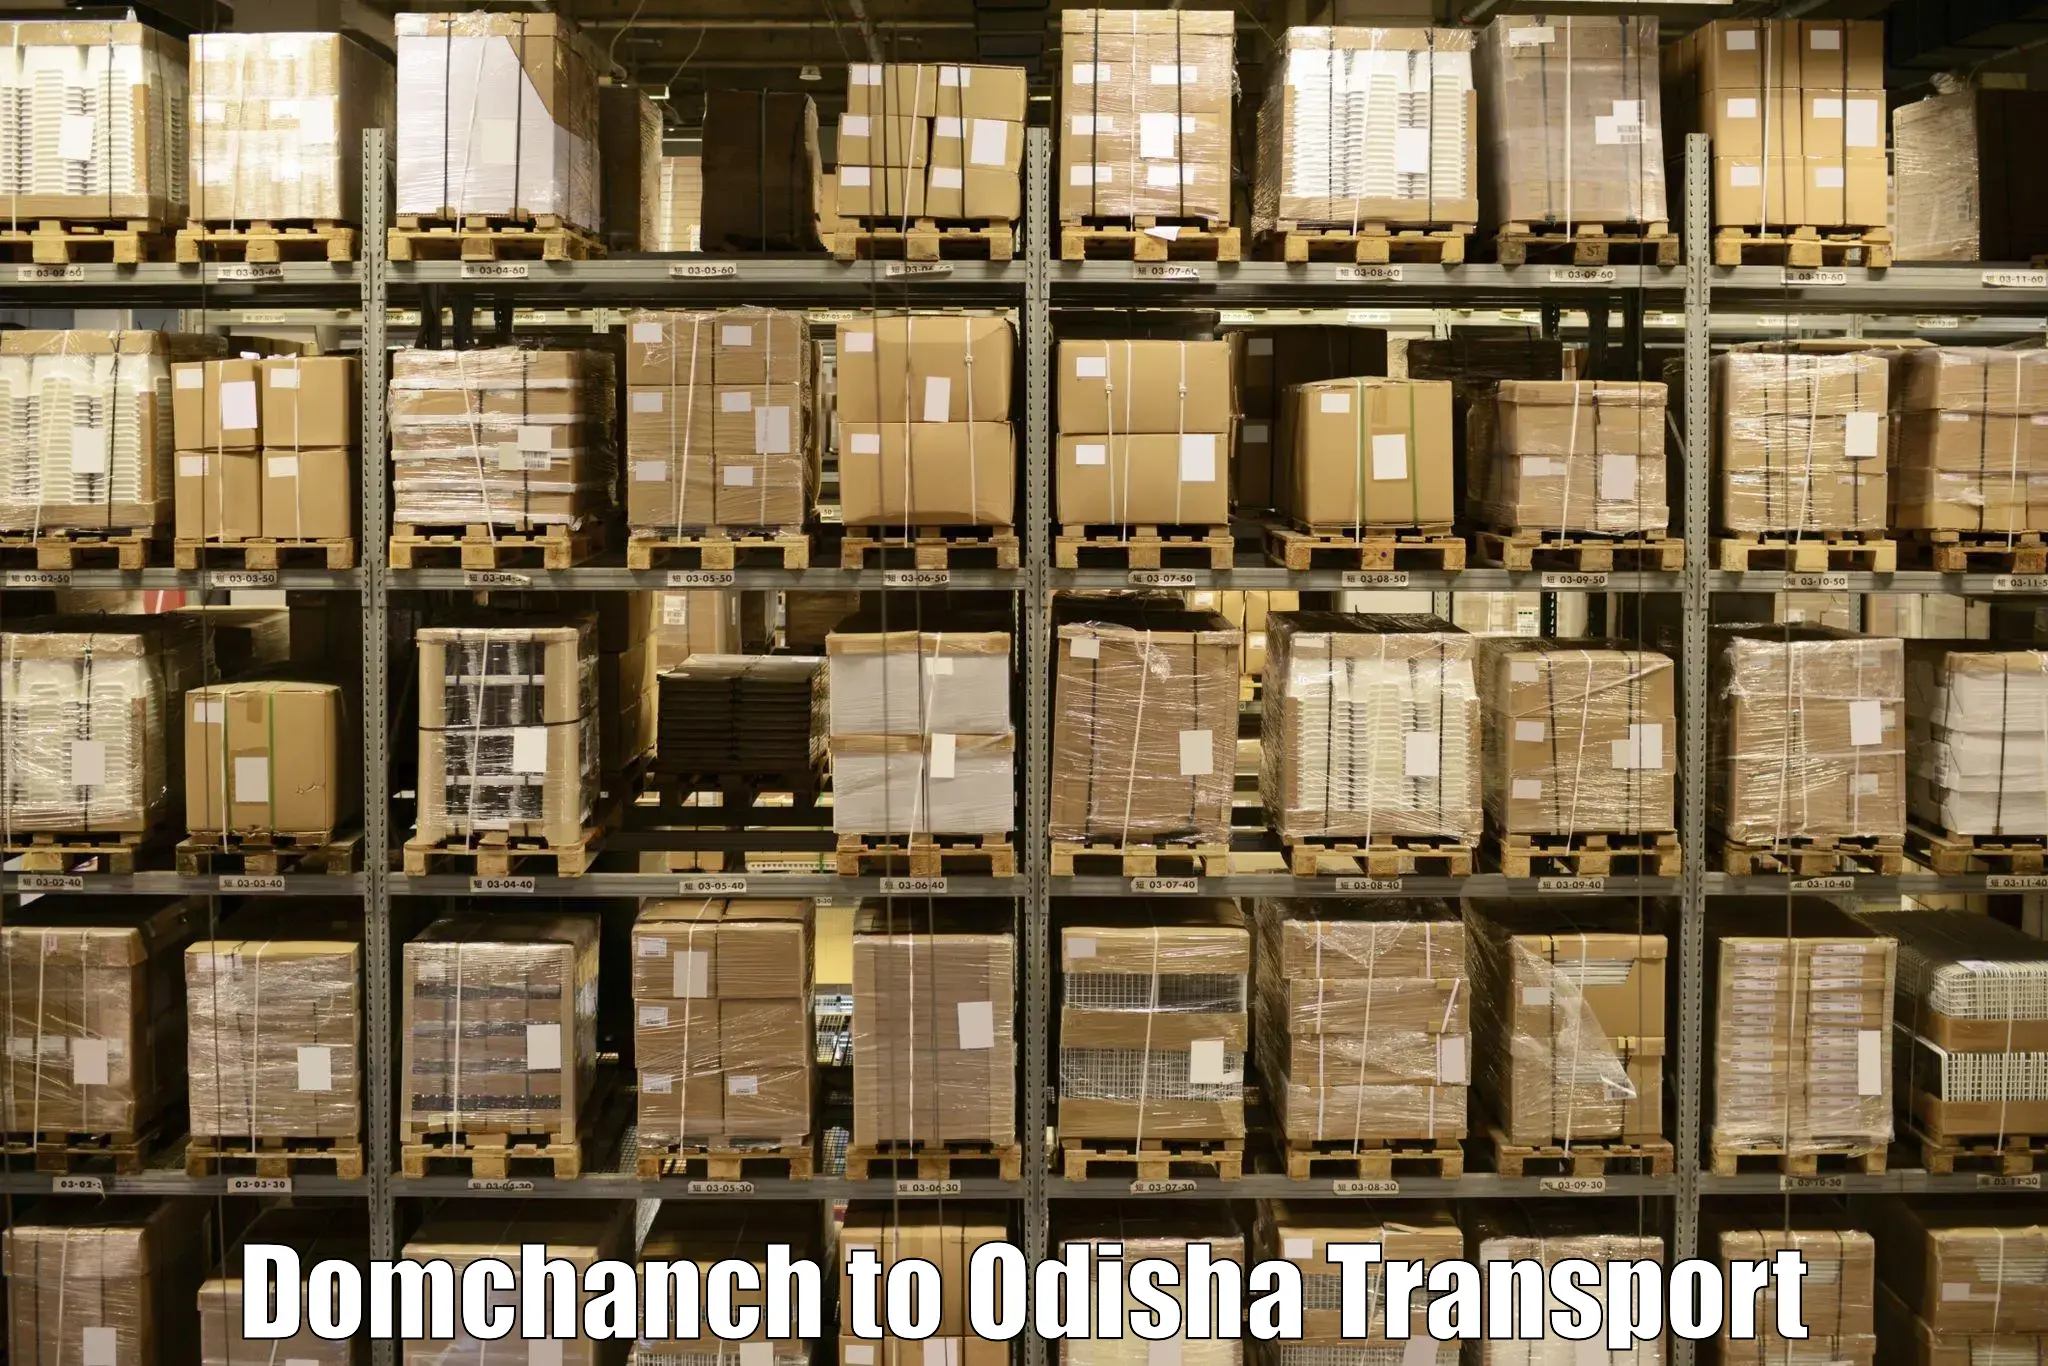 Online transport service Domchanch to Bargarh